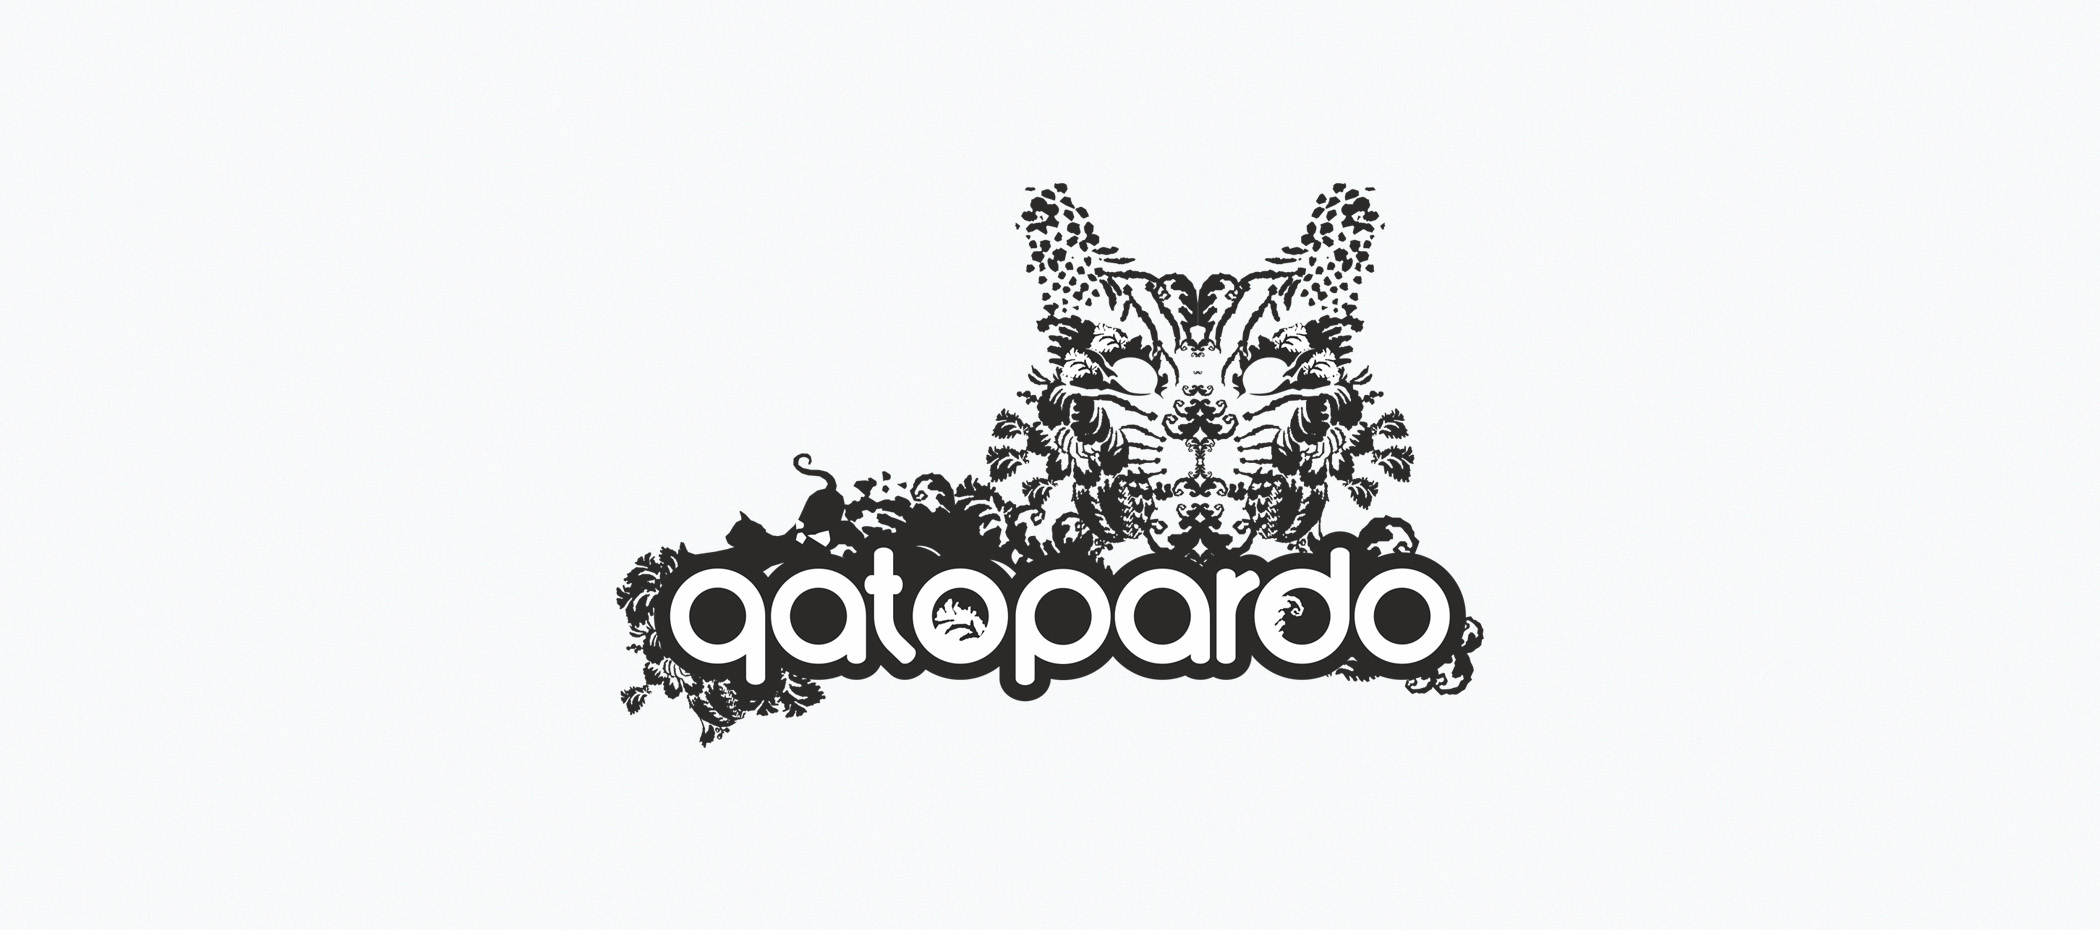 diseño logotipo - Beusual - diseño grafico santander - gatopardo